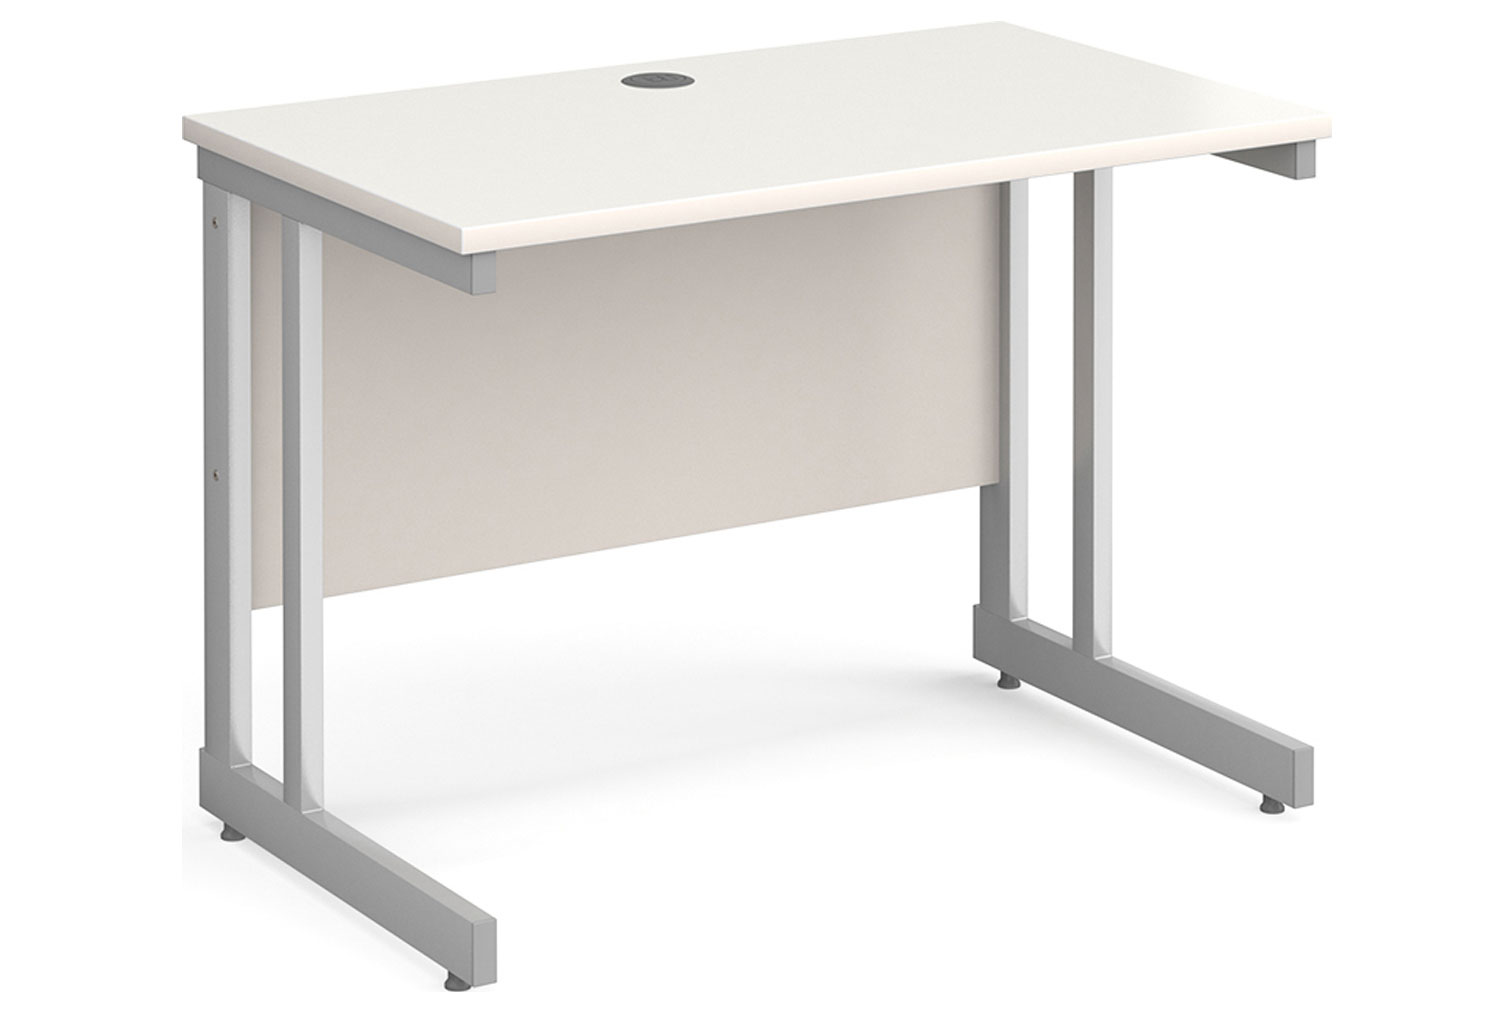 All White Double C-Leg Narrow Rectangular Office Desk, 100wx60dx73h (cm)